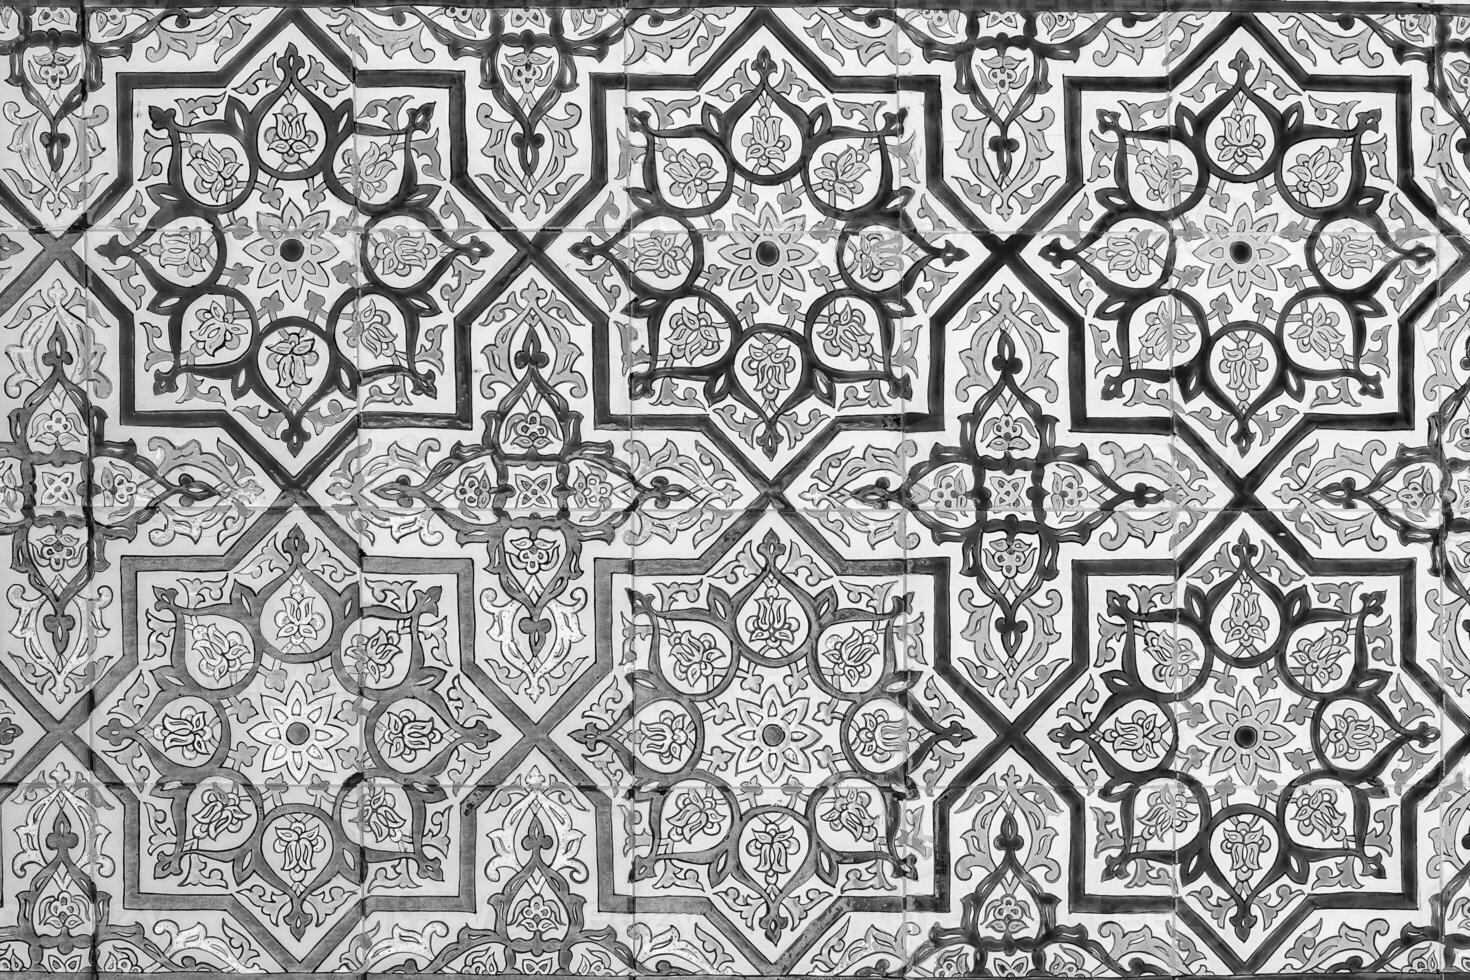 negro y blanco geométrico tradicional islámico ornamento en un teja. fragmento de un cerámico mosaico.abstracto antecedentes. foto